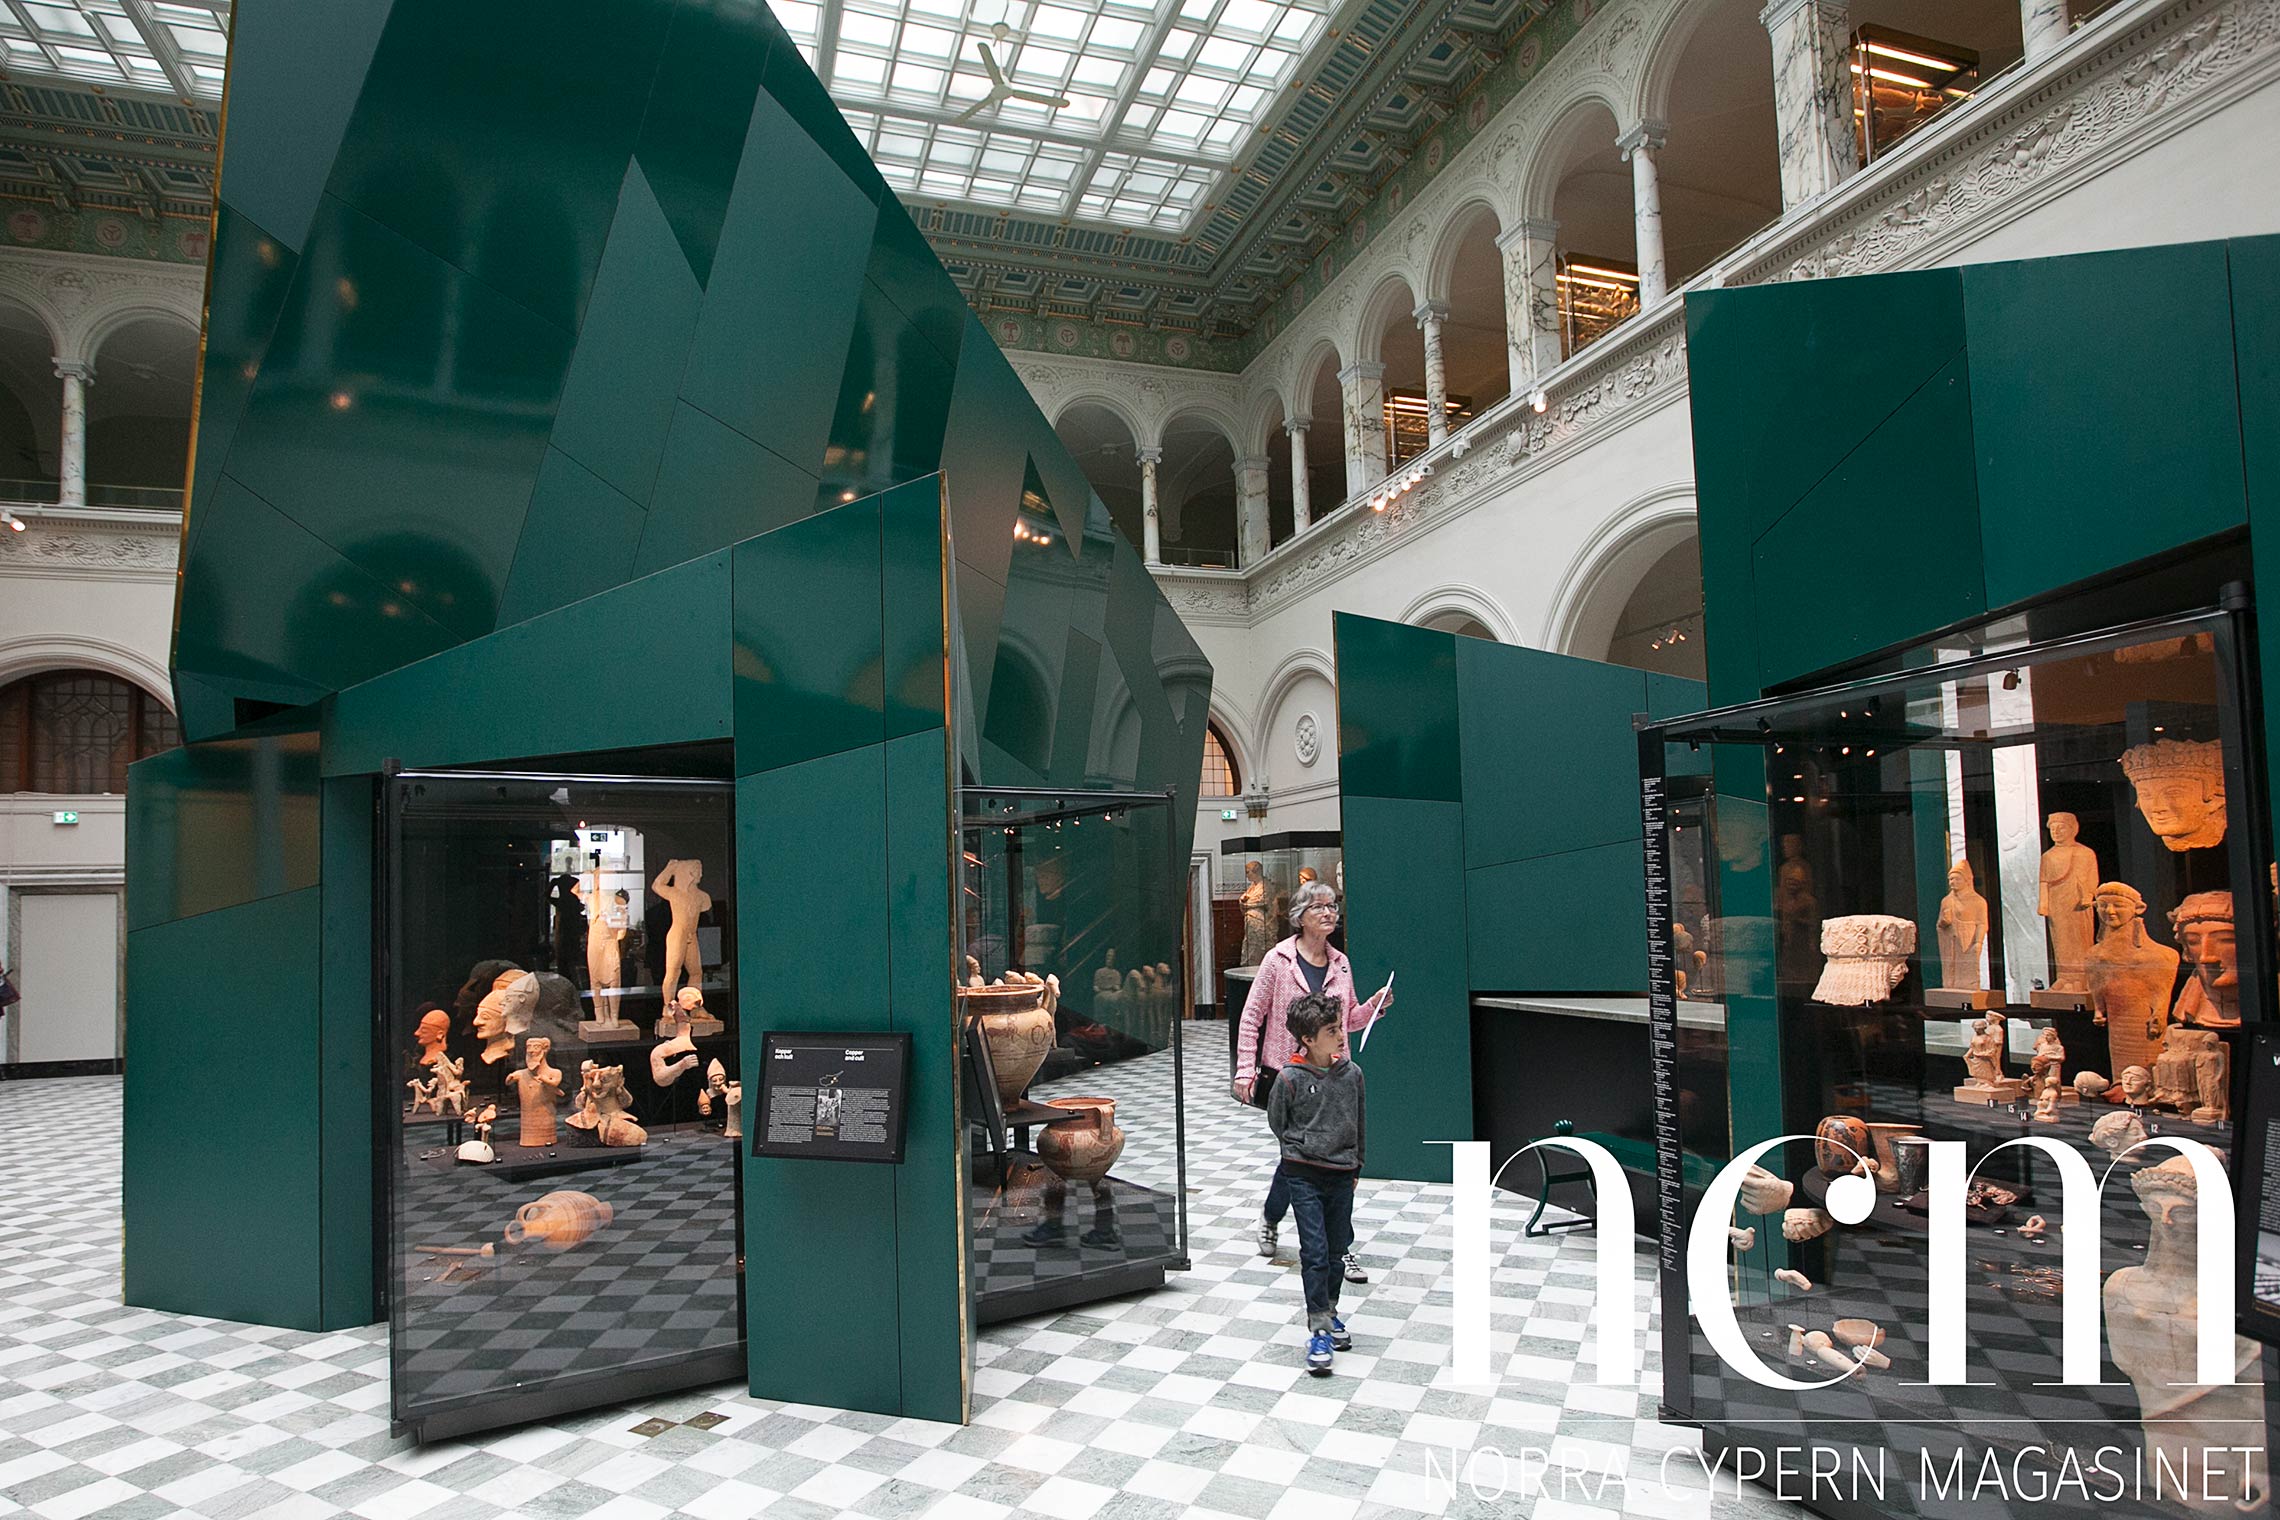 medelhavsmuseet i stockholm ligger i lokaler som tidigare var en bank